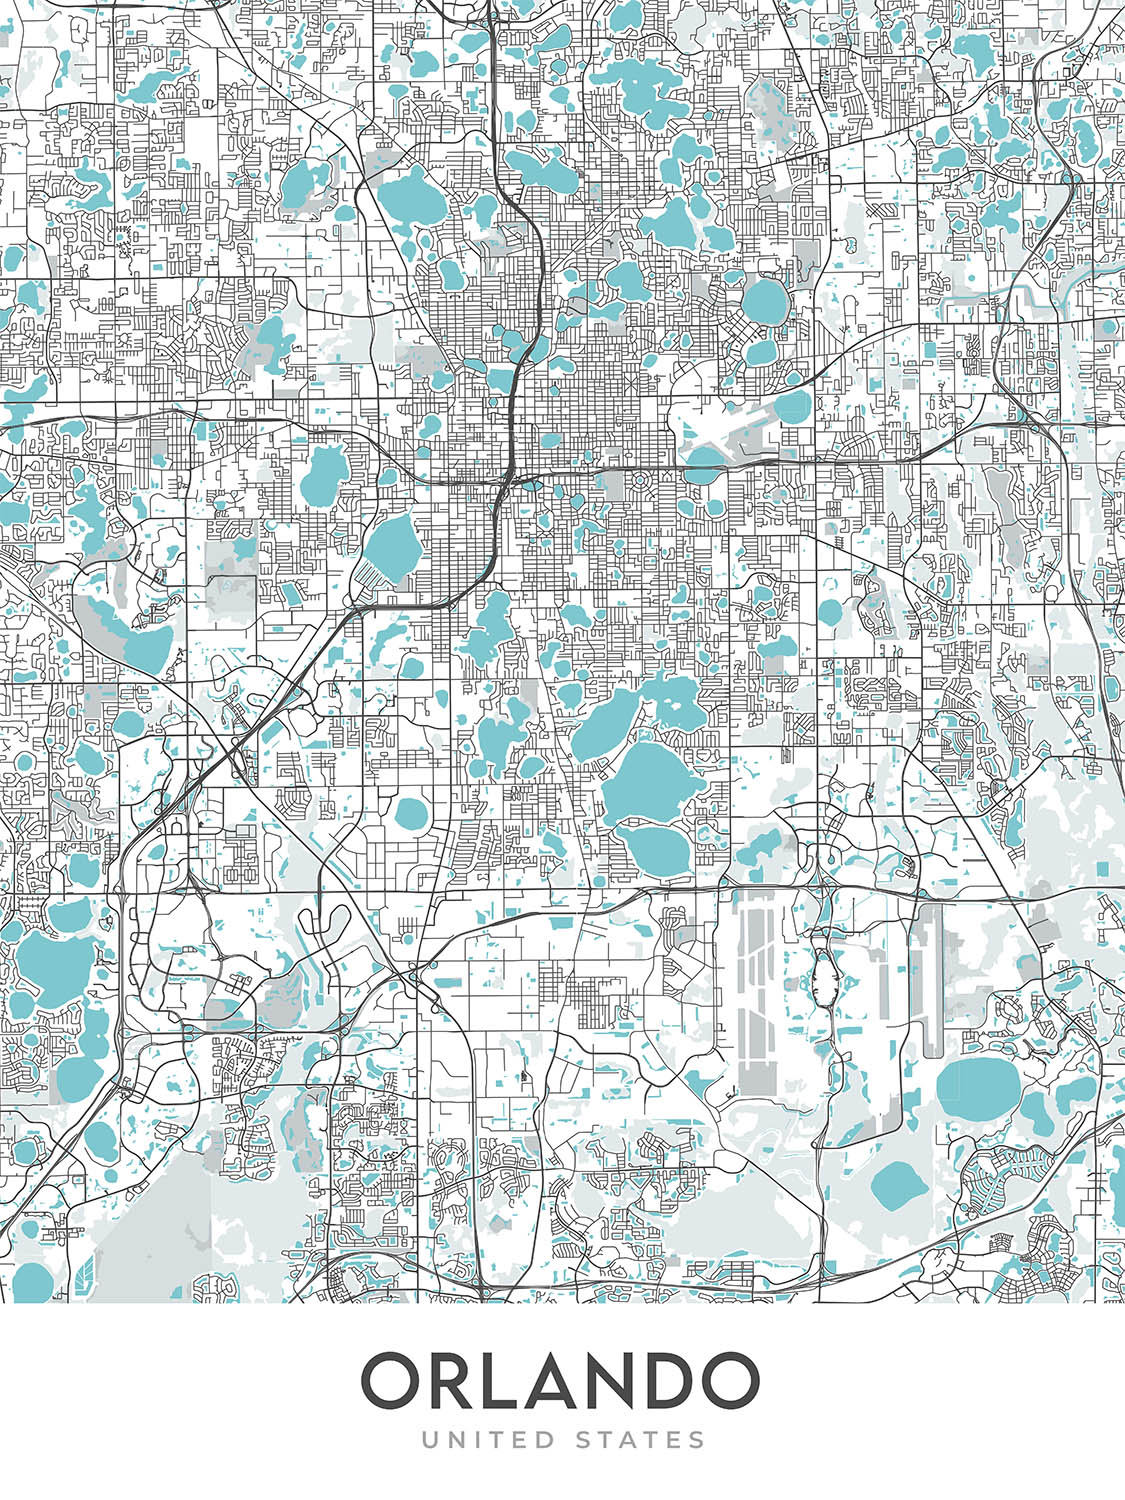 Modern City Map of Orlando, FL: College Park, Lake Eola Park, Leu Gardens, I-4, SR 408